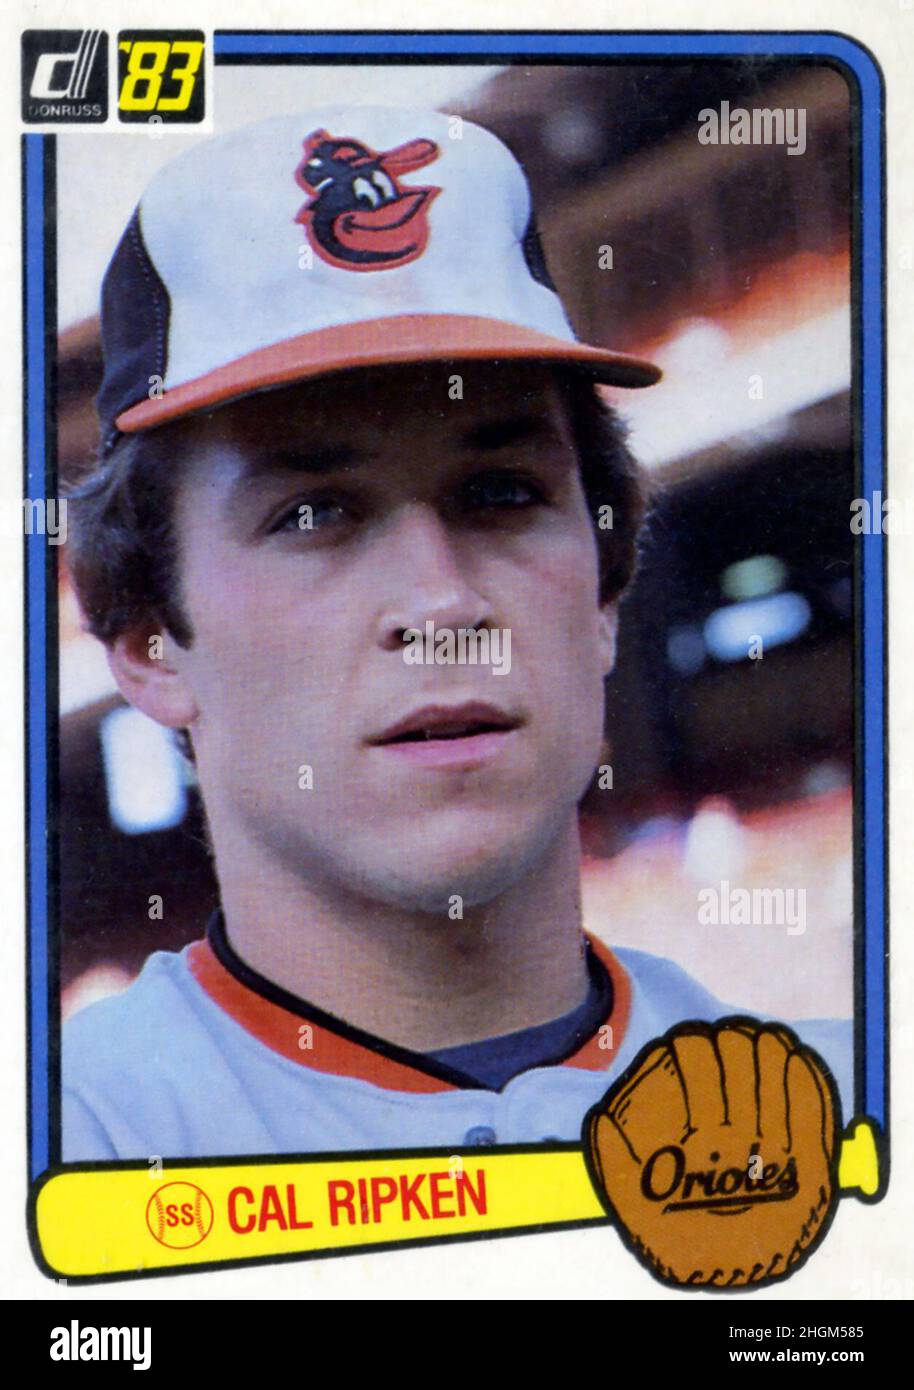 a 1983 Donruss baseball card depicting Cal Ripken of the Baltimore Orioles. Stock Photo